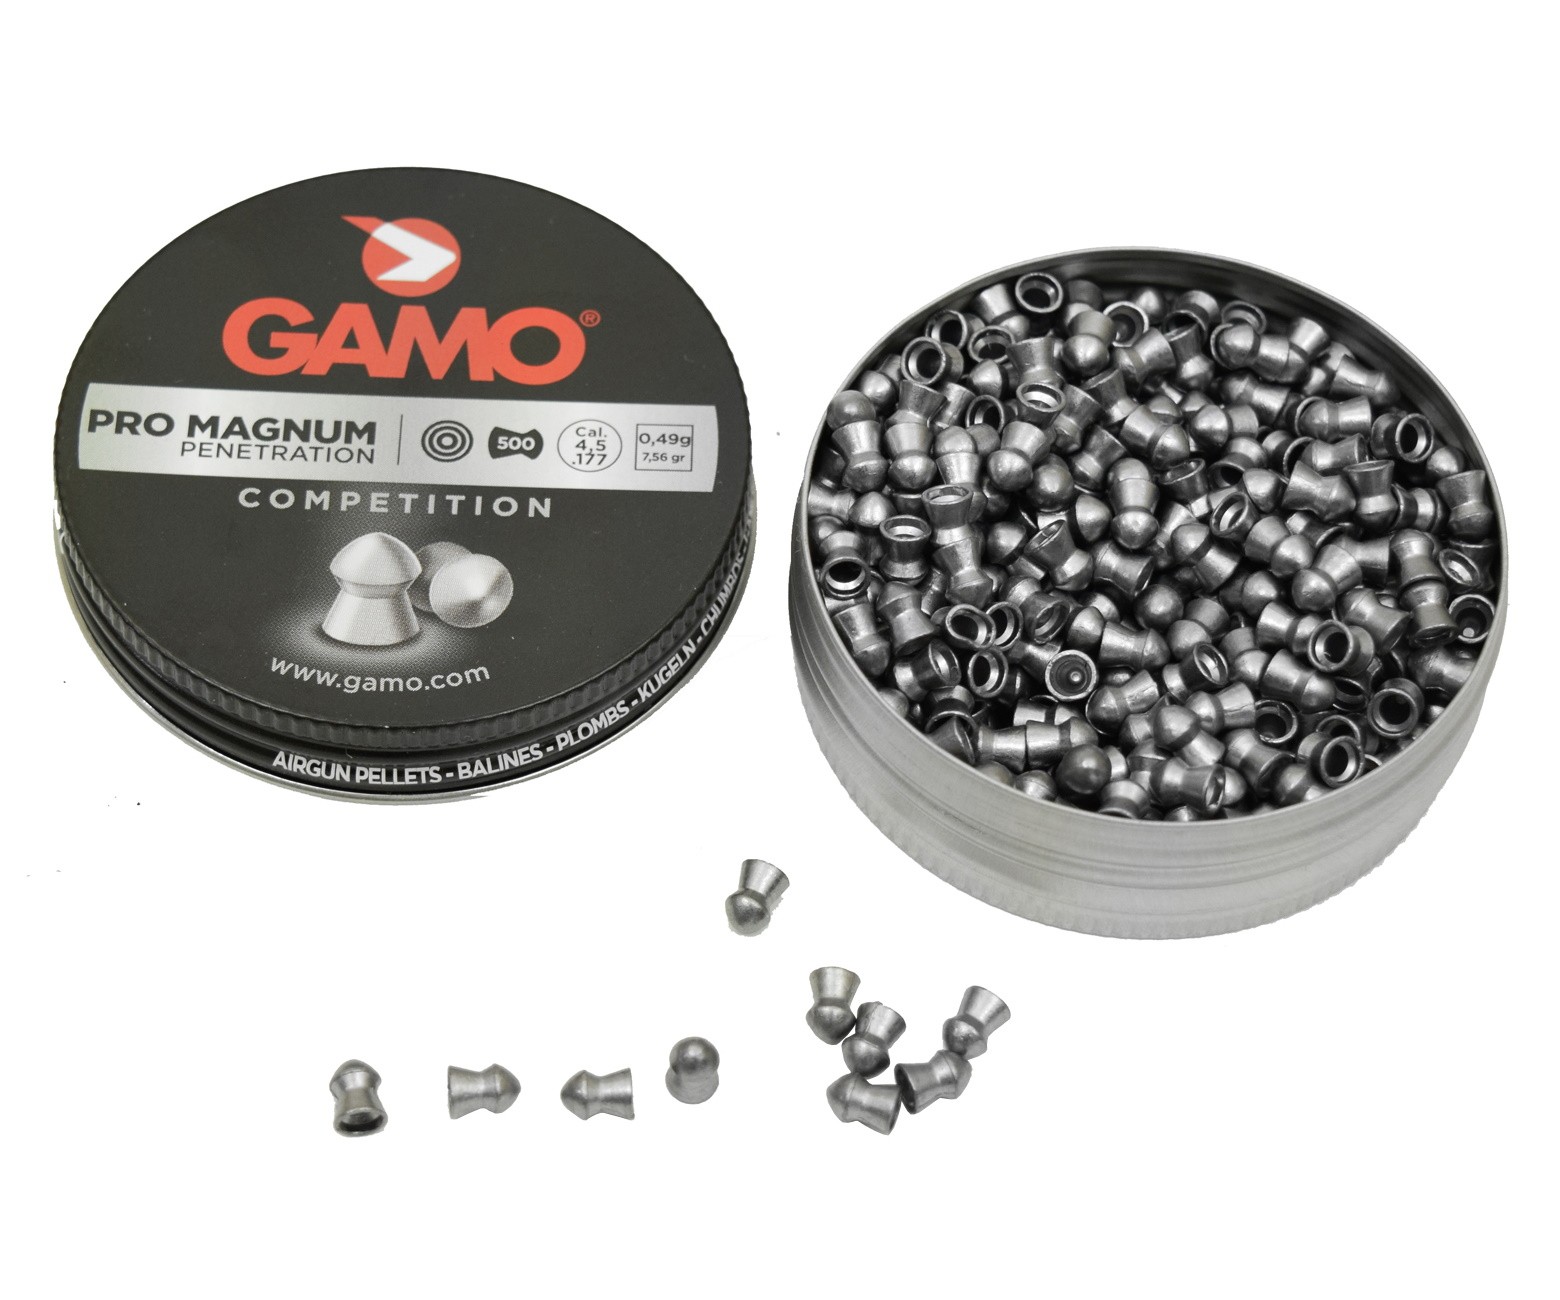 Пули Gamo Pro Magnum 4,5 мм, 0,49 грамм, 500 штук, изображение 2